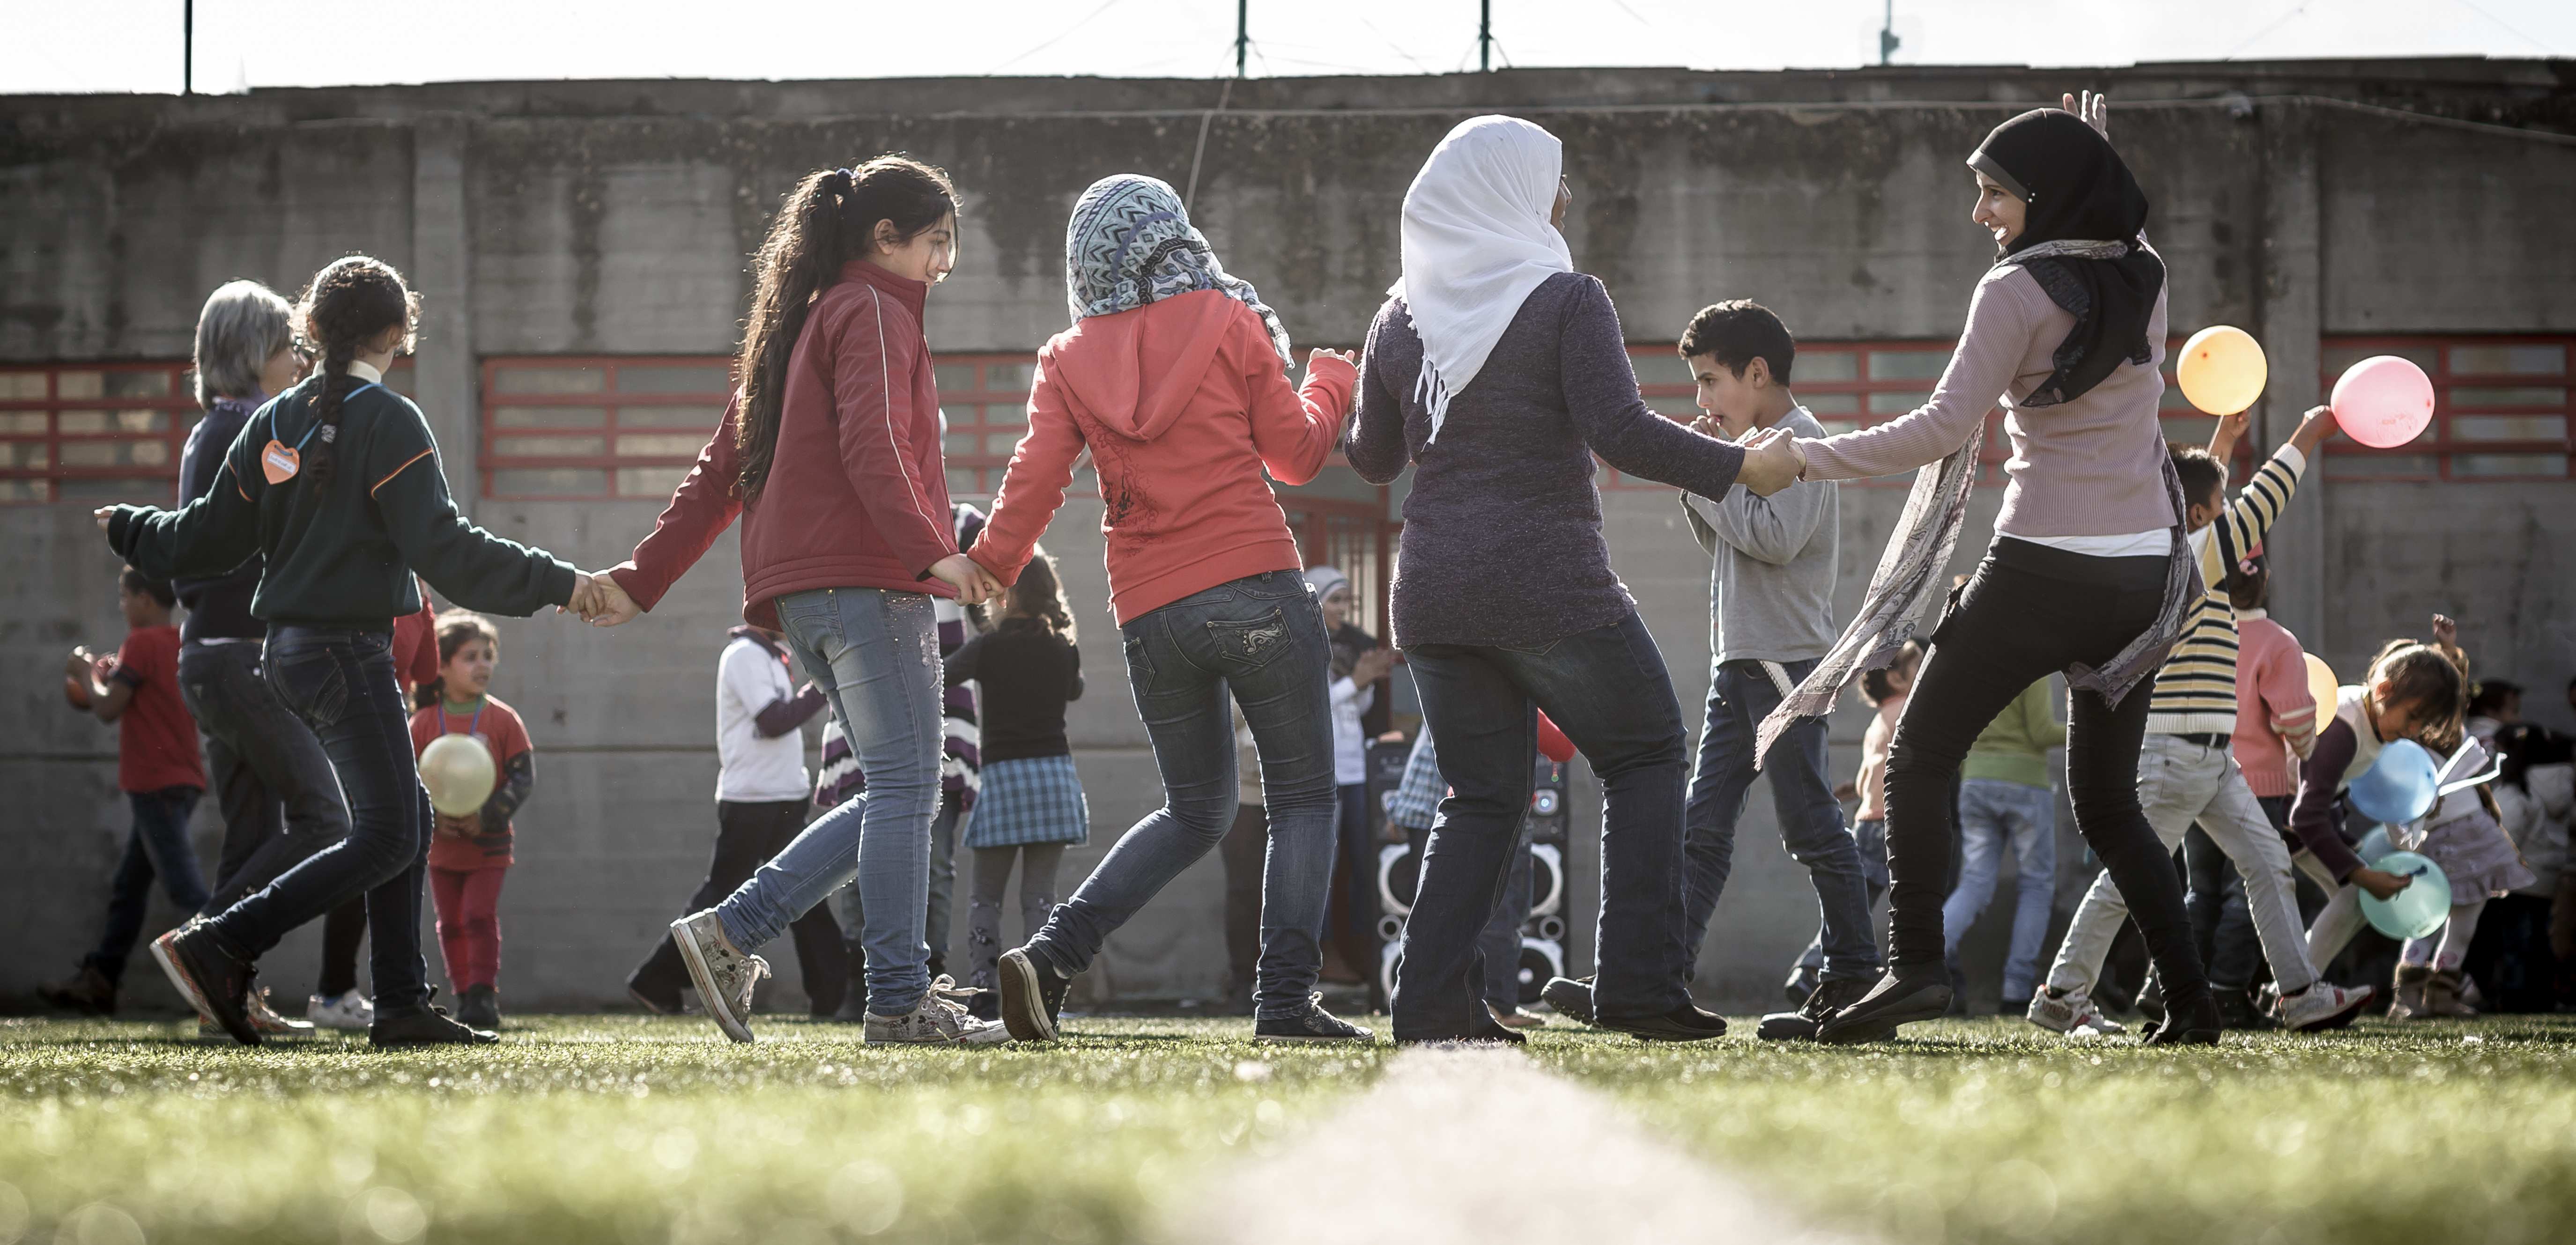 Jungen Mädchen im Libanon halten sich an den Händen und tanzen im Kreis. (Quelle: Jakob Studnar)